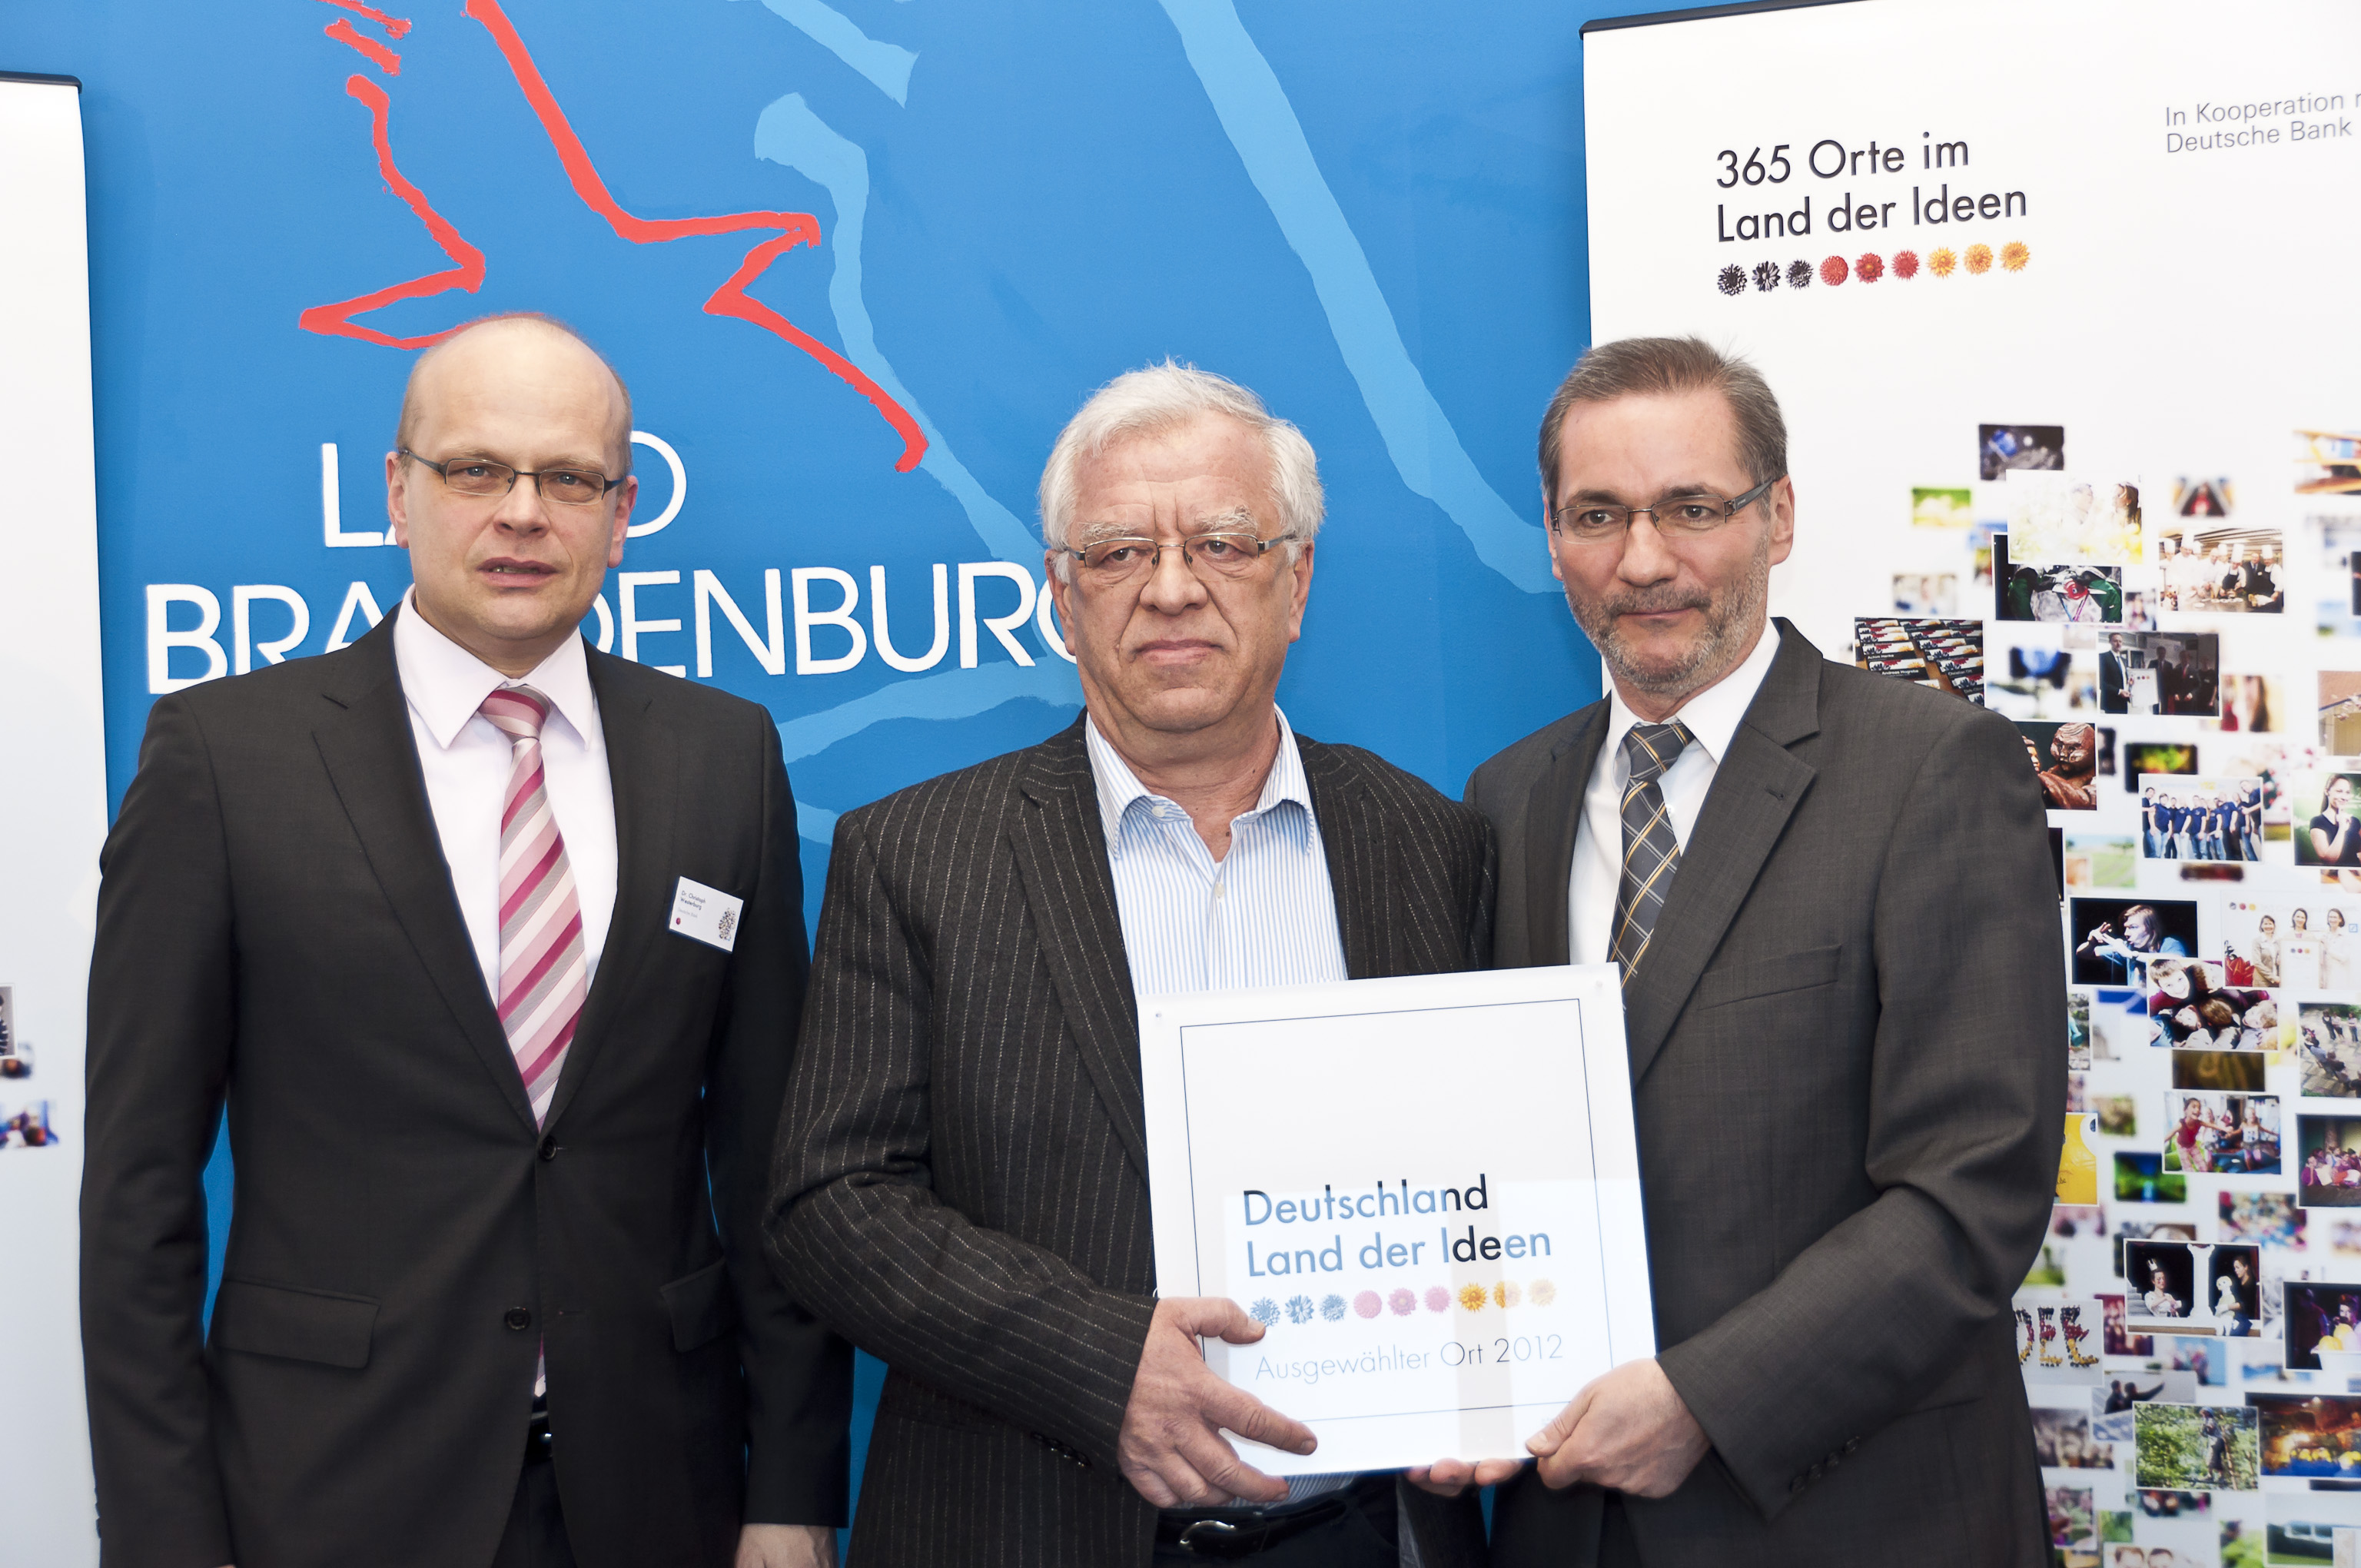 „365 Orte im Land der Ideen“ ist ein Wettbewerb der Standortinitiative „Deutschland – Land der Ideen“, der gemeinsam mit der Deutschen Bank realisiert wird.